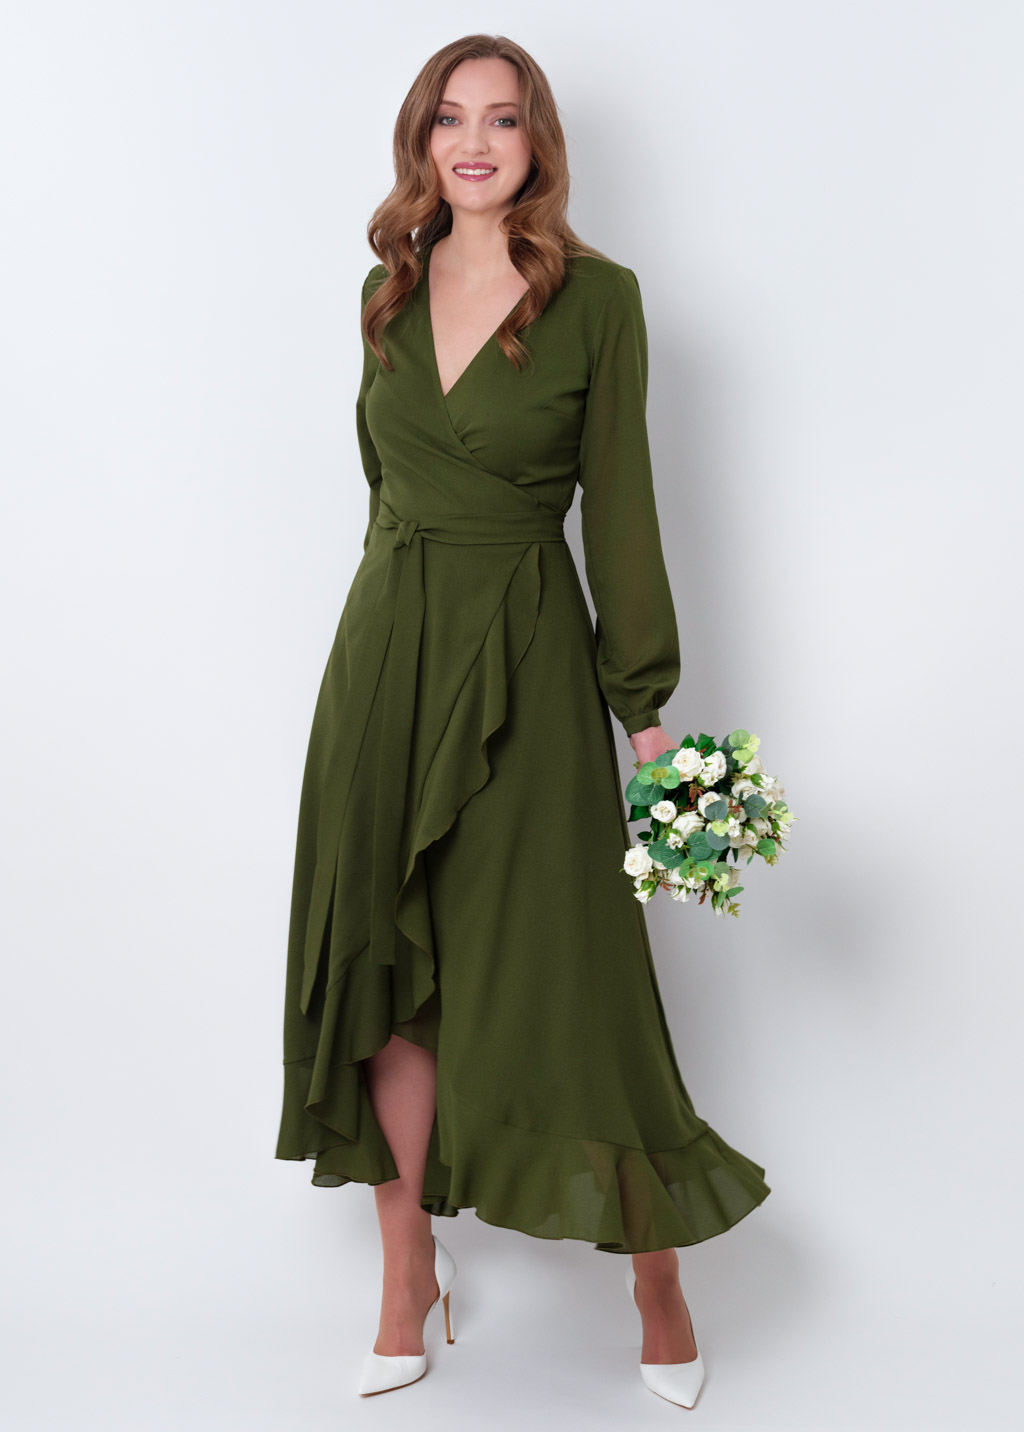 Olive green chiffon wrap dress